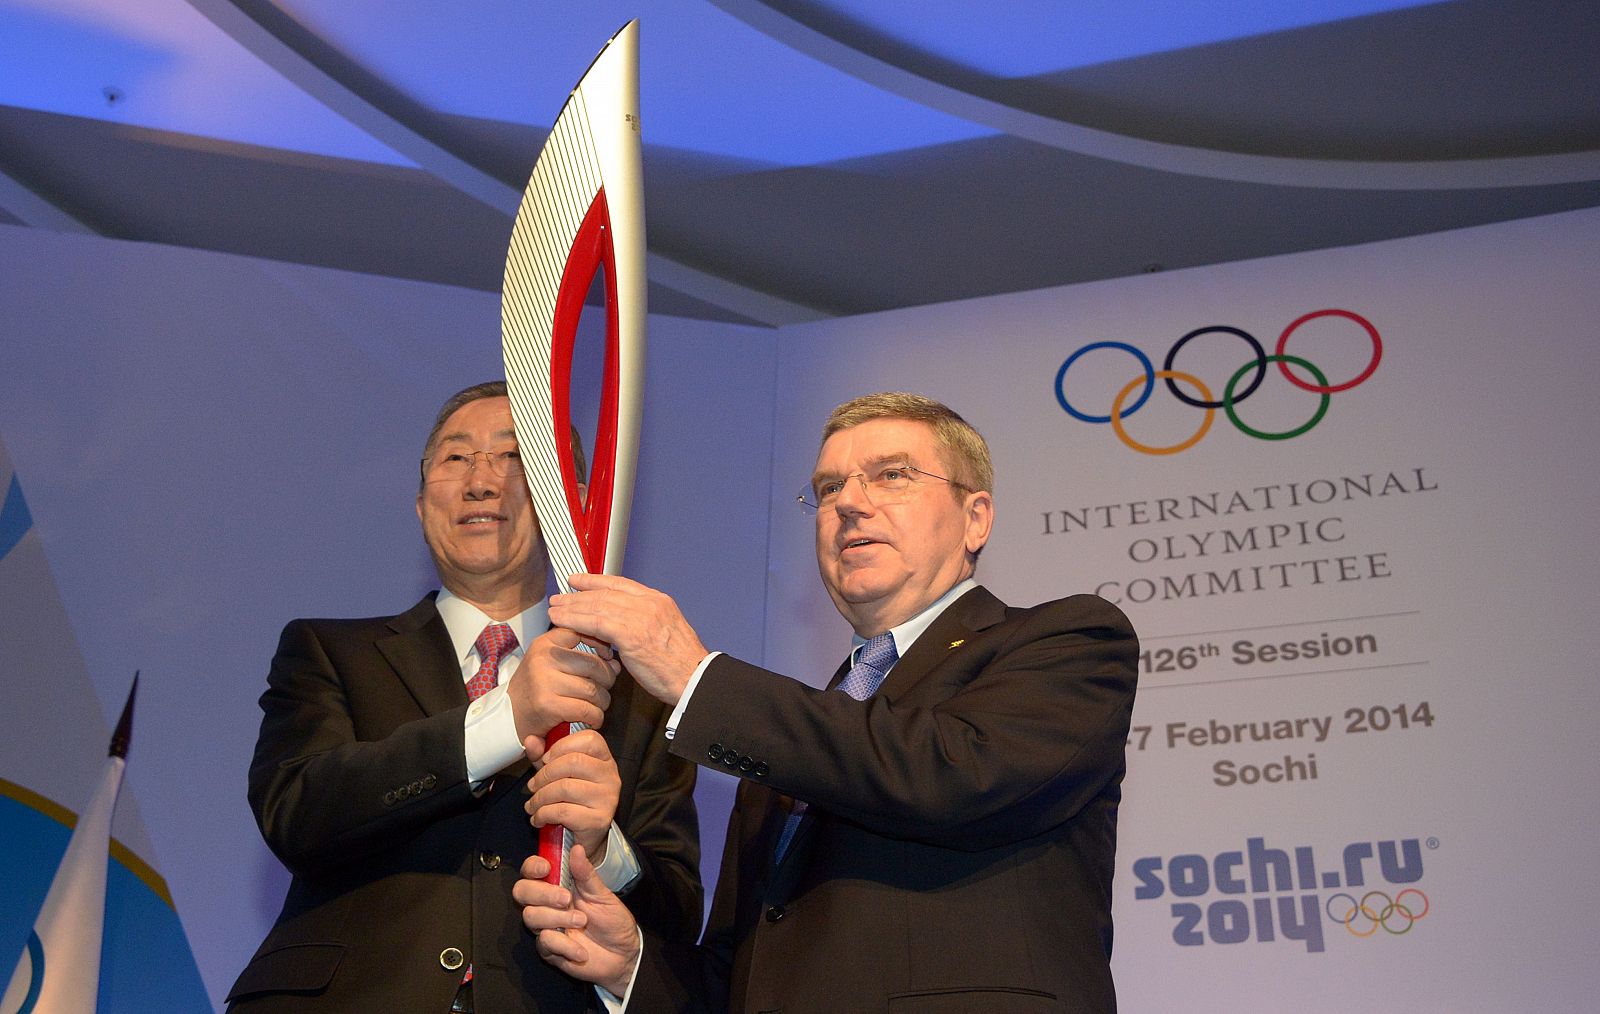 Ban Ki moon sostiene la antorcha de Sochi 2014 con el presidente del COI, Thomas Bach